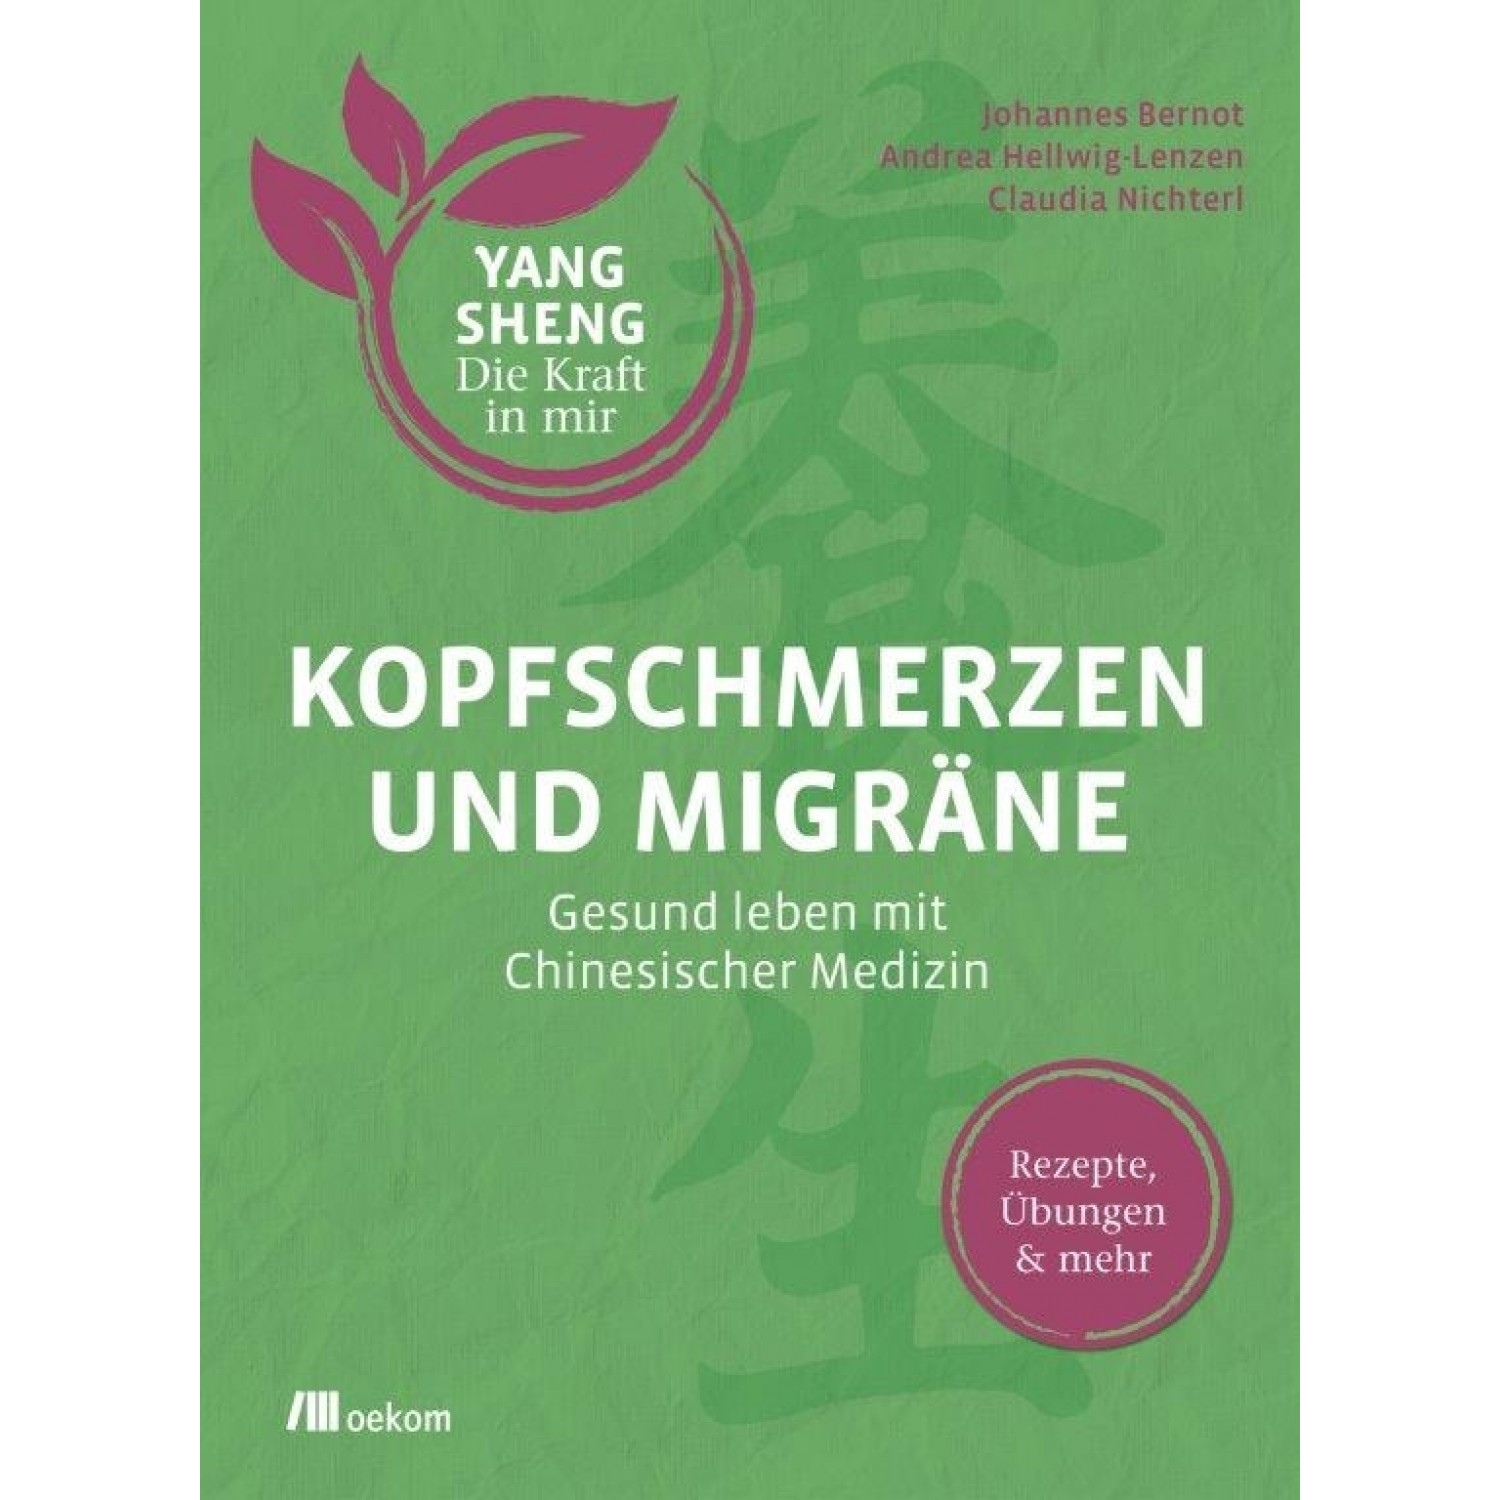 Kopfschmerzen und Migräne - YANG SHENG | oekom Verlag